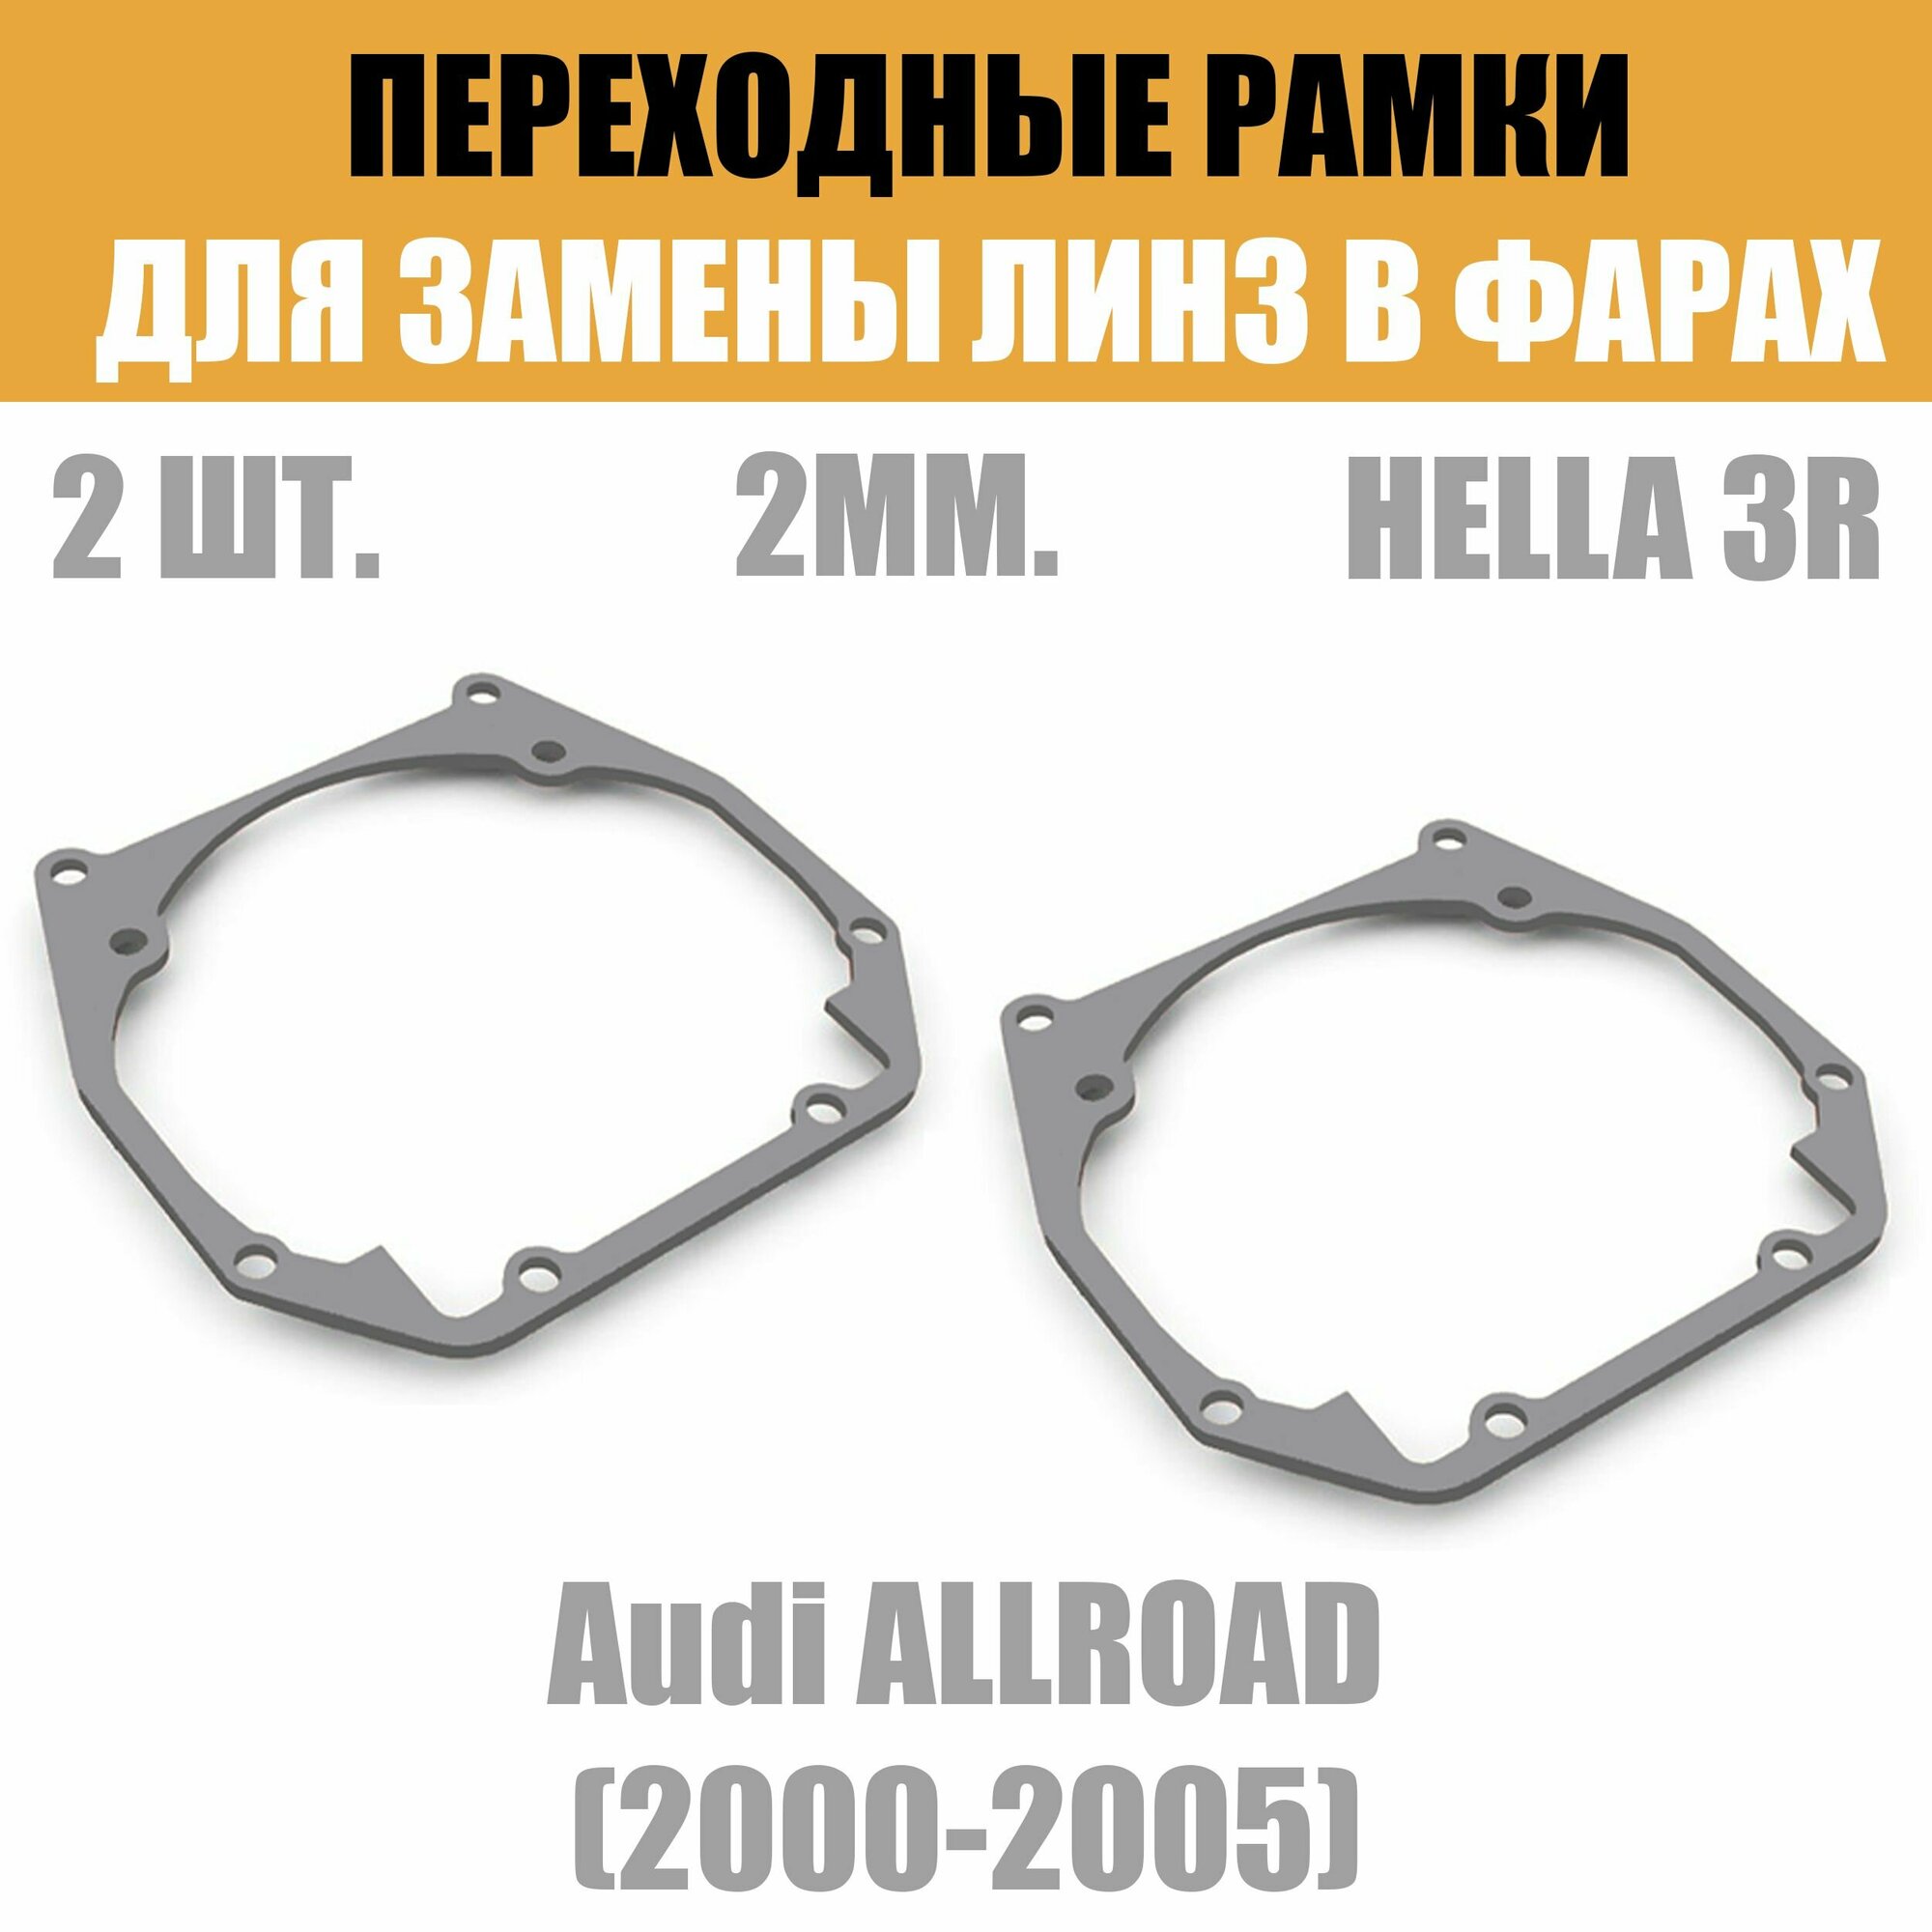 Переходные рамки для линз №61 на Audi ALLROAD (2000-2005) под модуль Hella 3R/Hella 3 (Комплект 2шт)